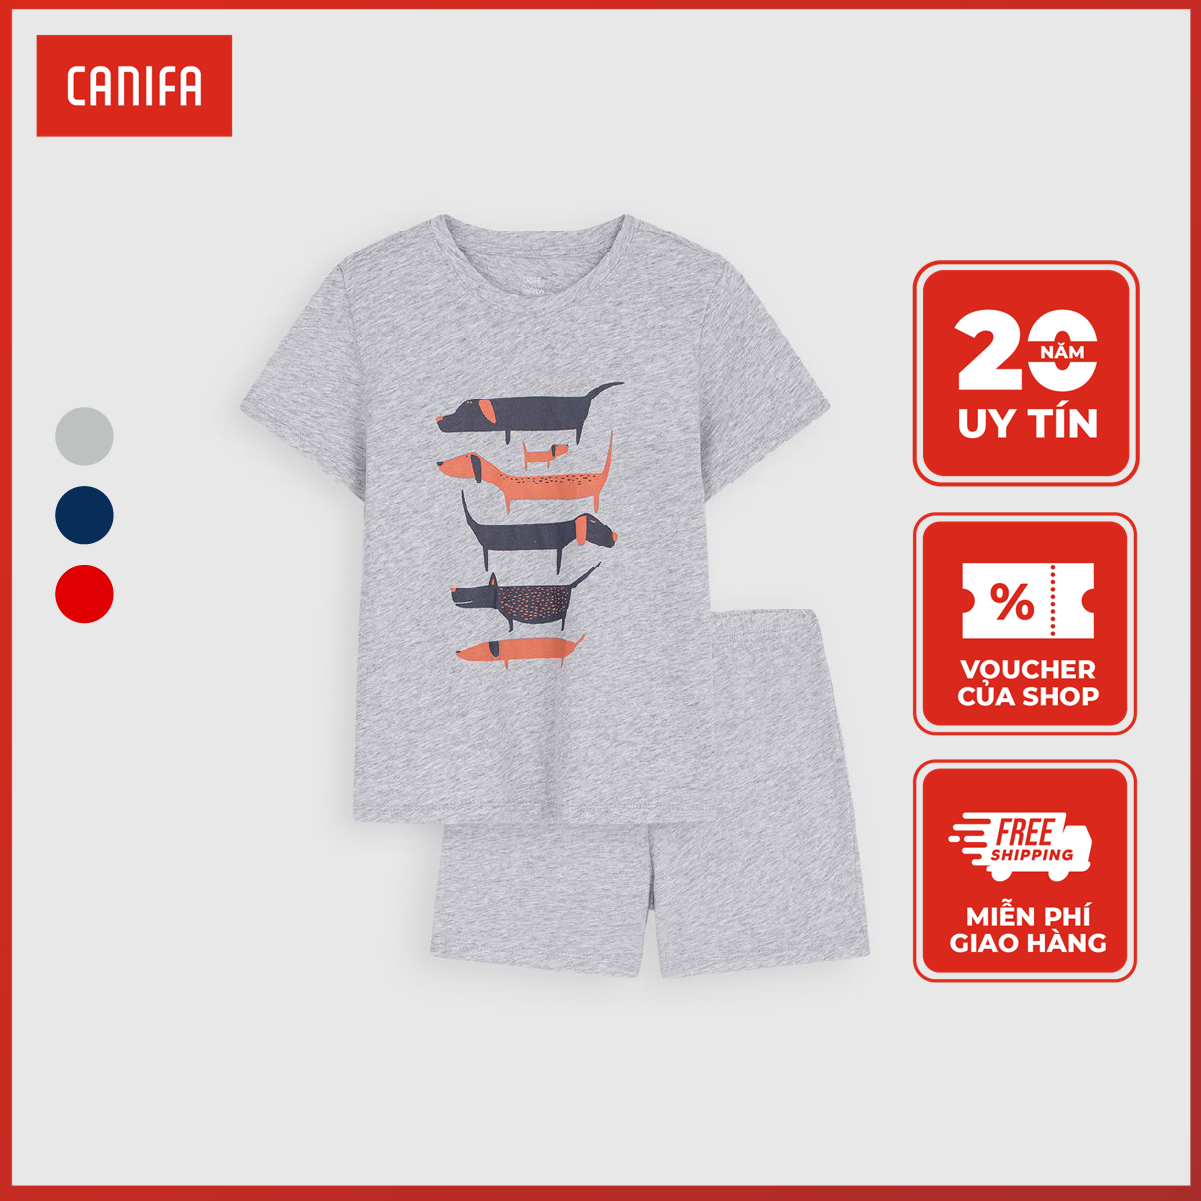 CANIFA Bộ thun mặc nhà tay ngắn bé trai 2 - 14 tuổi, chất liệu cotton thoáng mát, thoải mái 2LS22S002